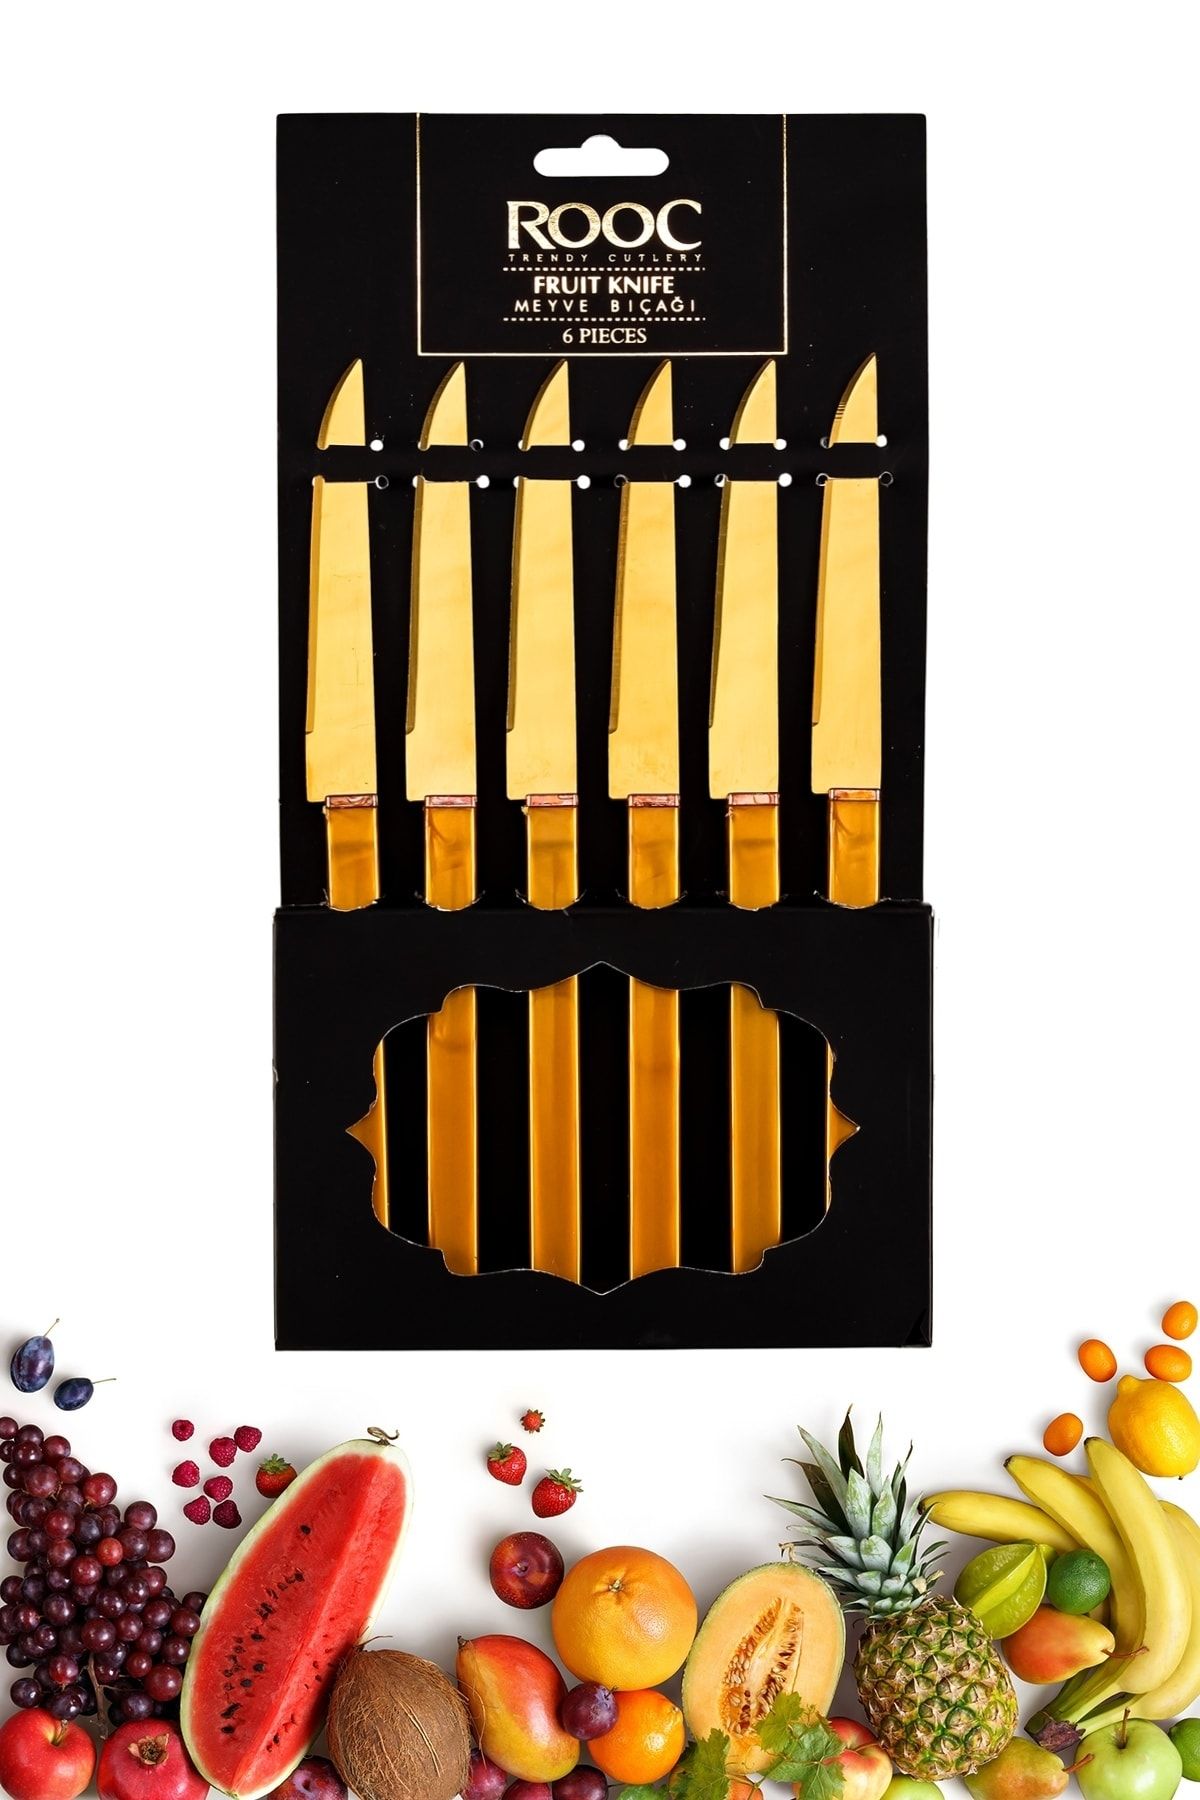 Rooc Yeni Ürün Lüks Meyve Bıçağı Seti Altın 6 Parça Bıçak Takımı Kare Saplı Meyve Bıçağı Altın